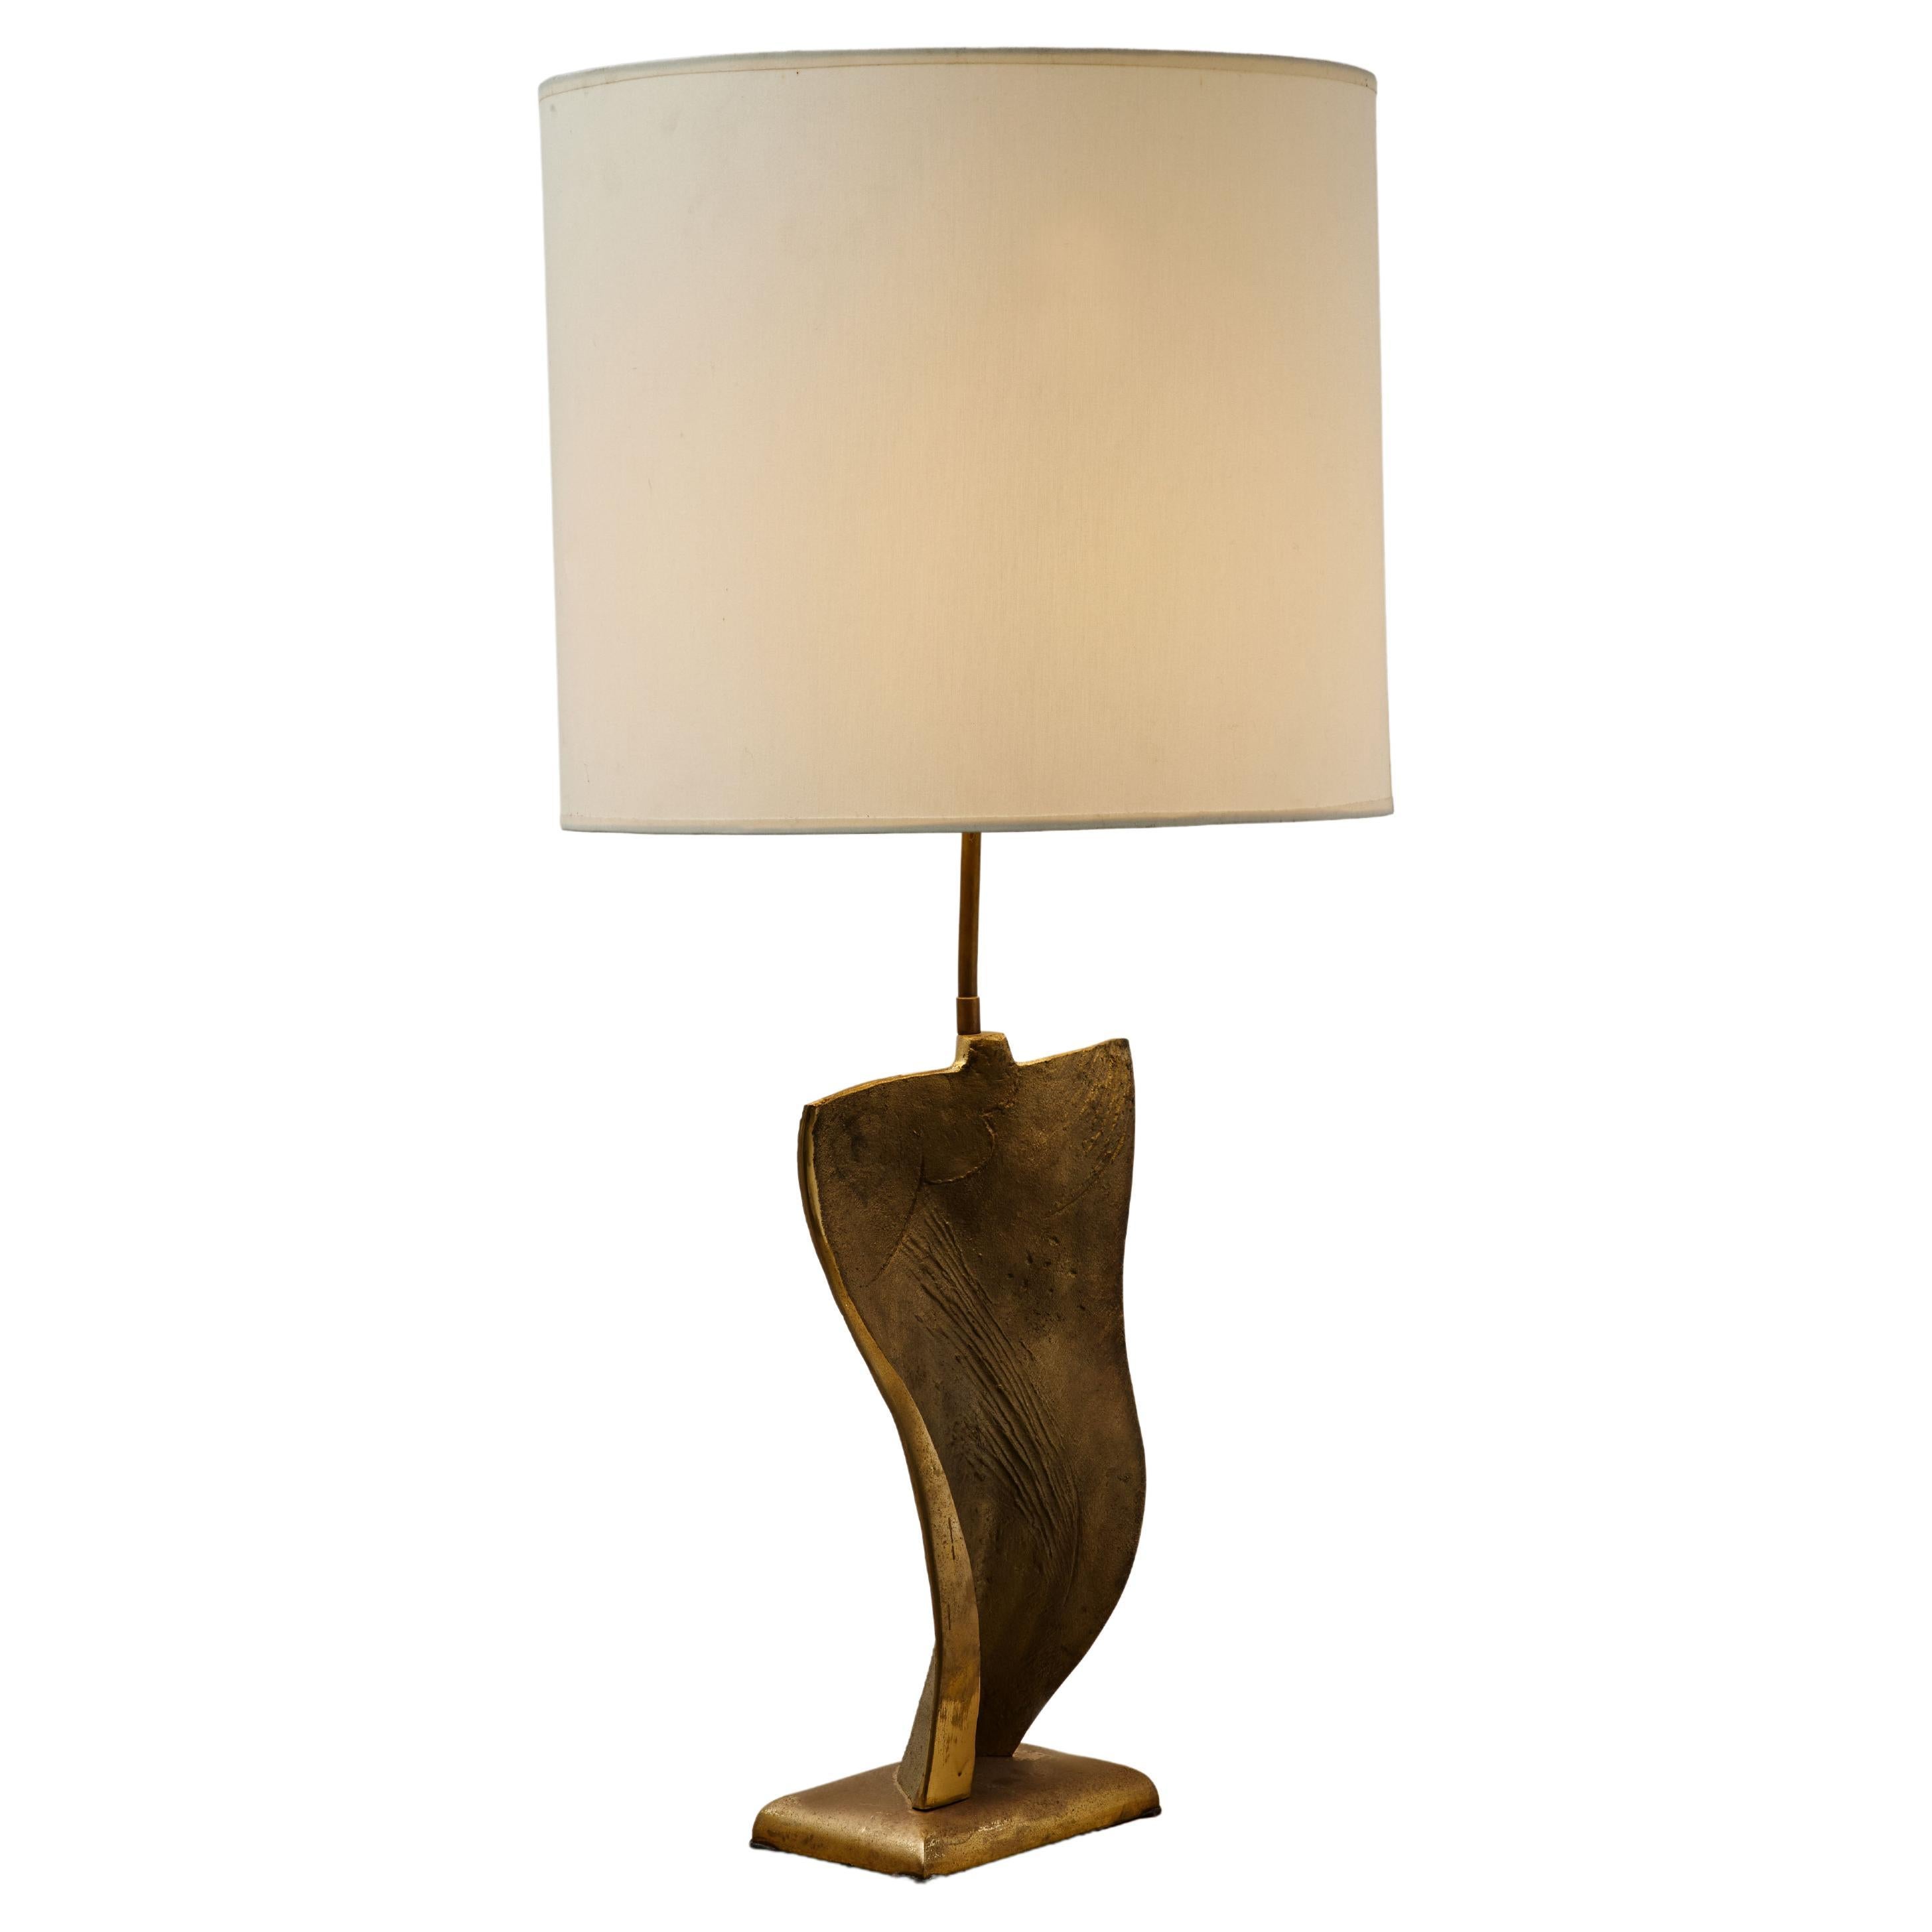 Lampe en bronze vintage au prix abordable